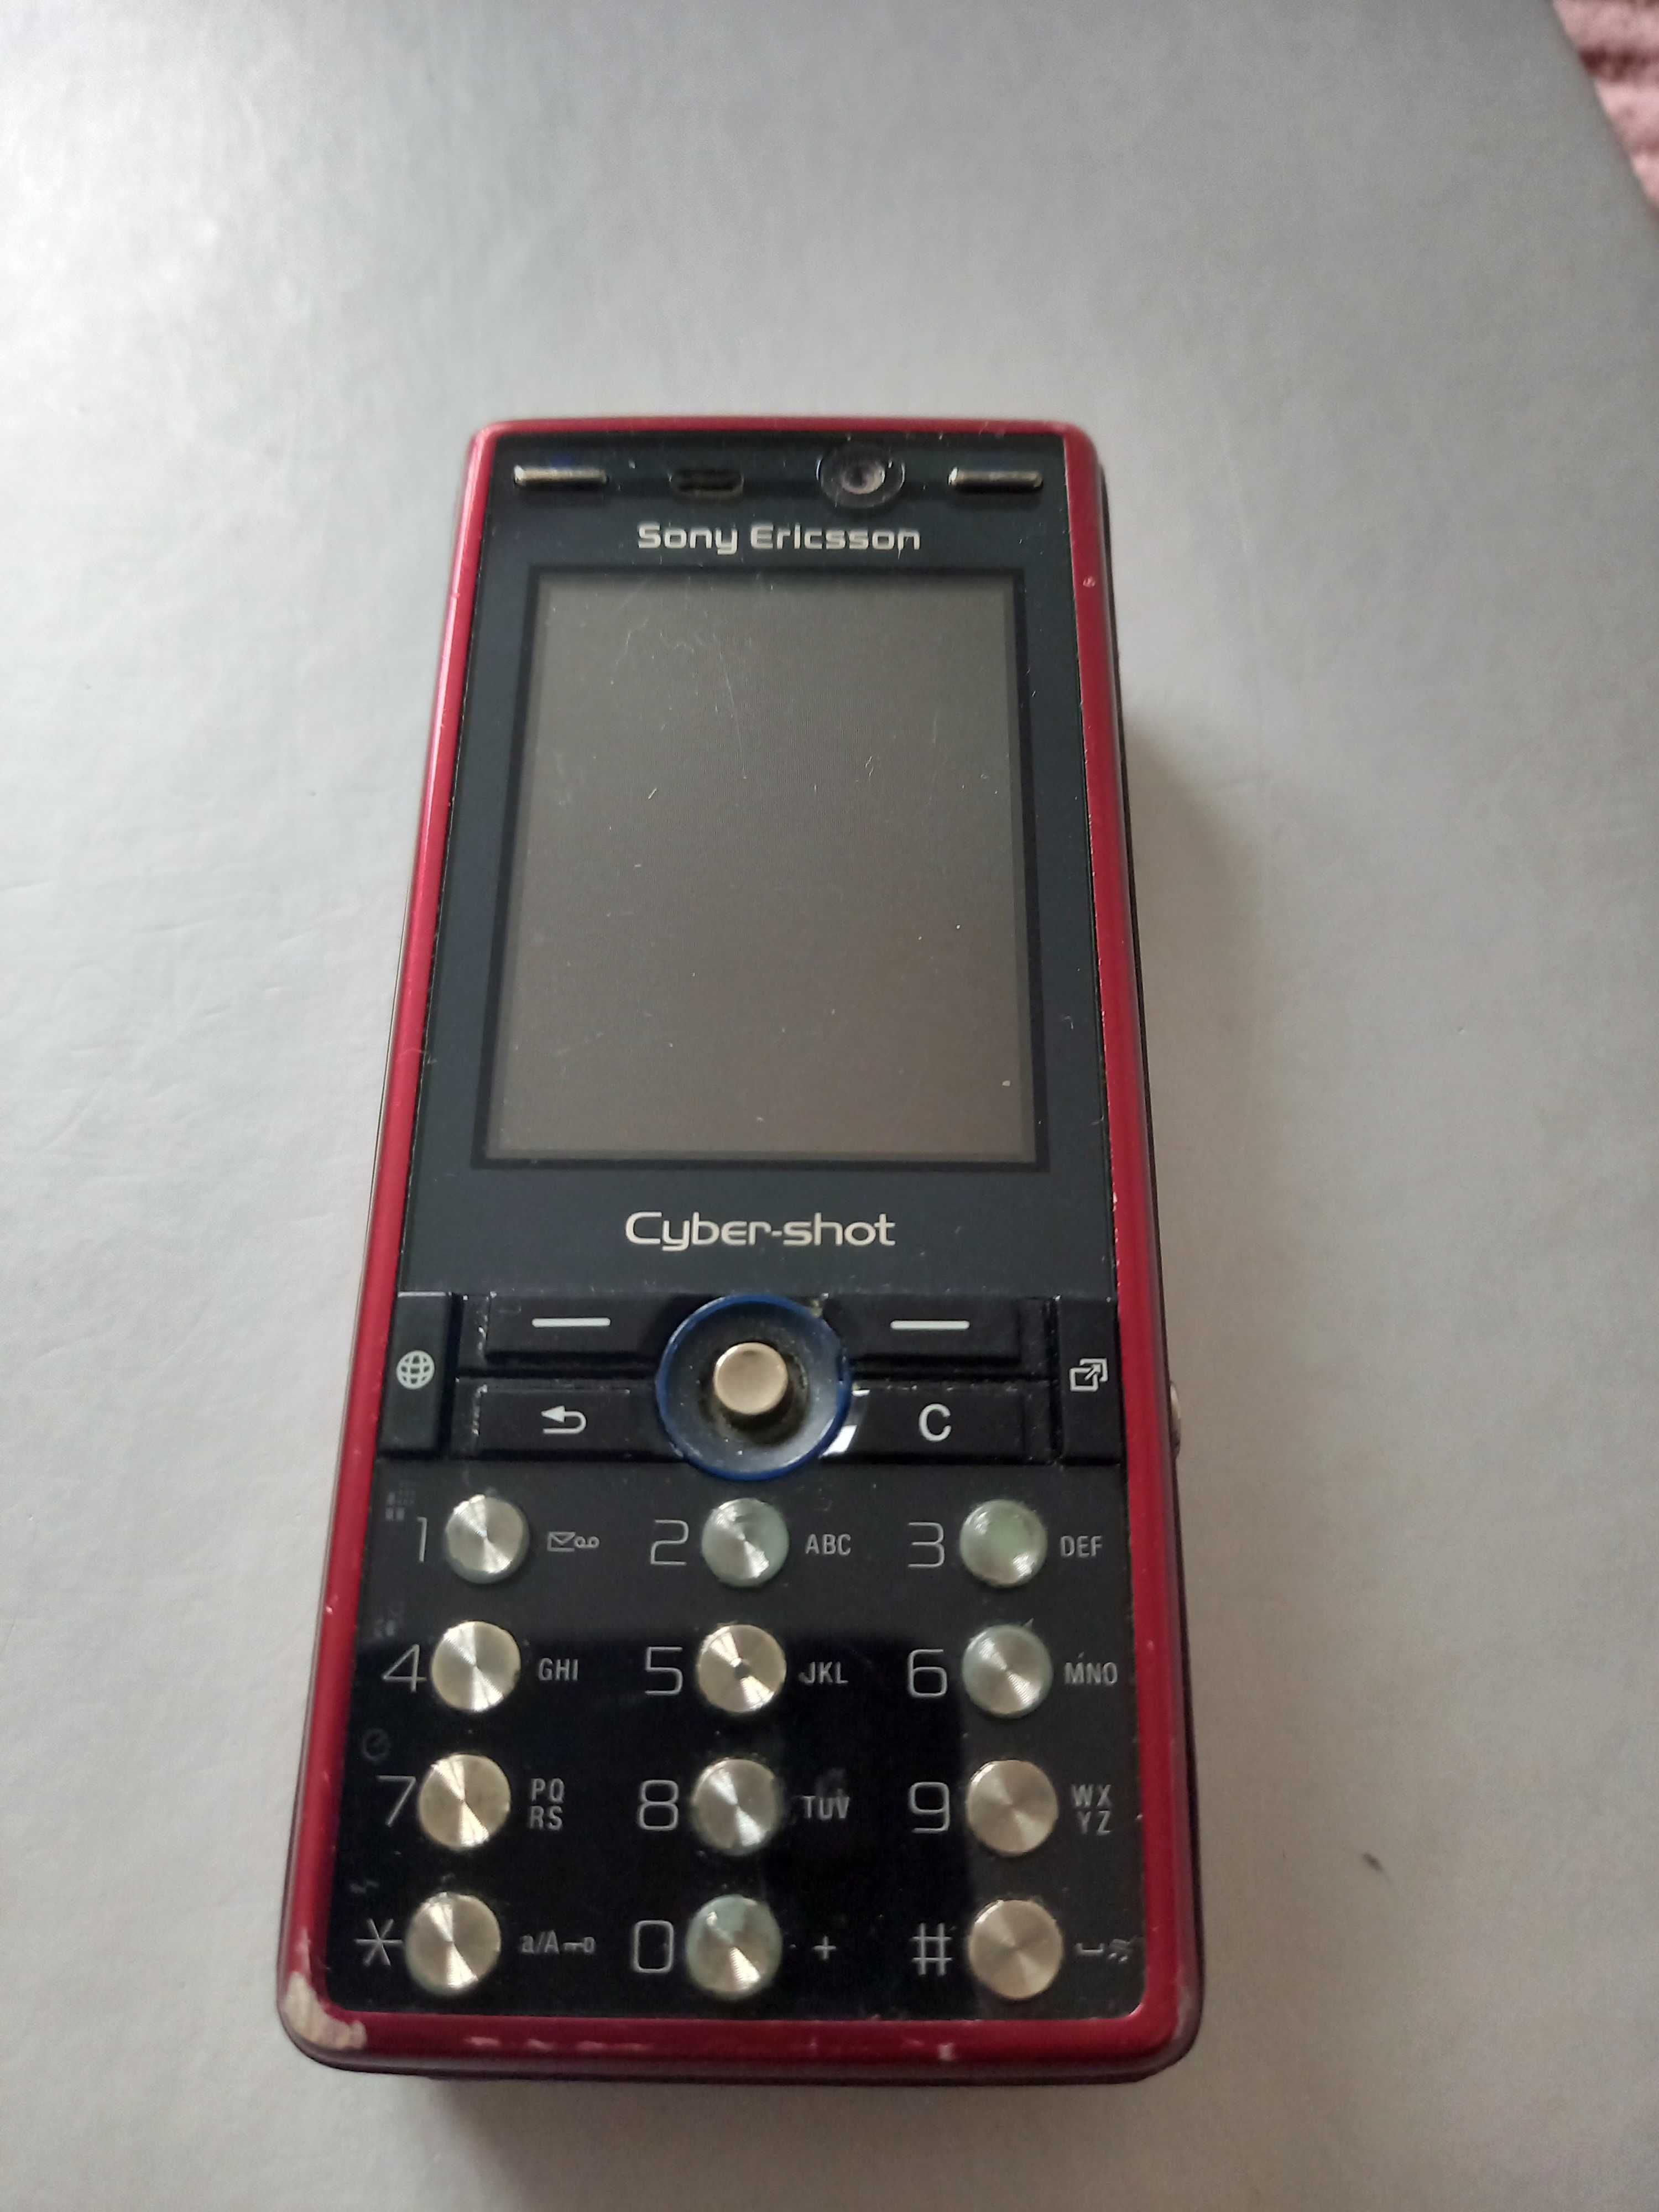 Sony Ericsson Cyber-shot k810i